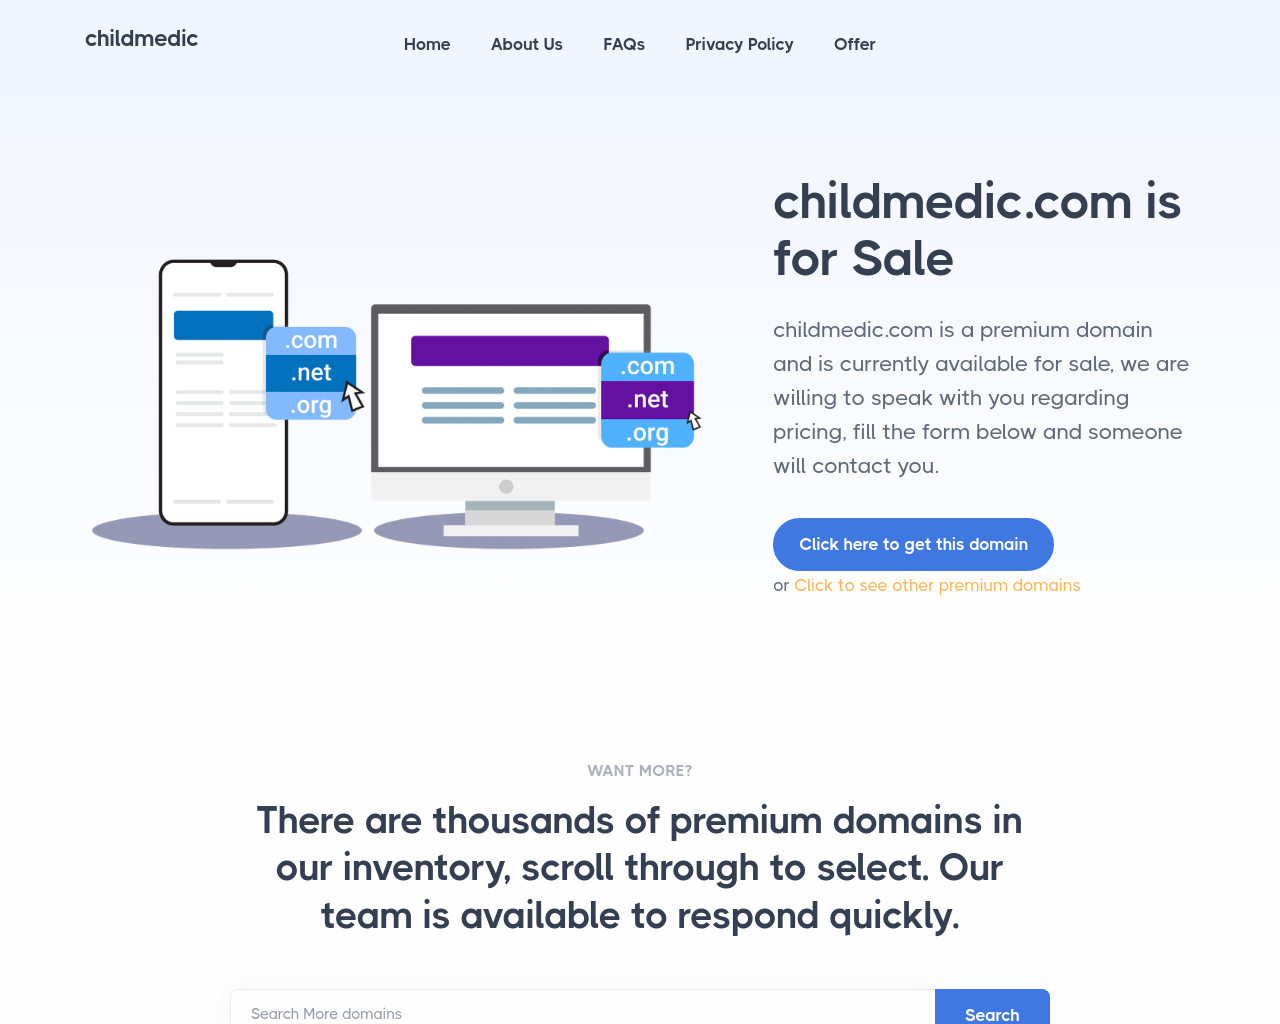 childmedic.com